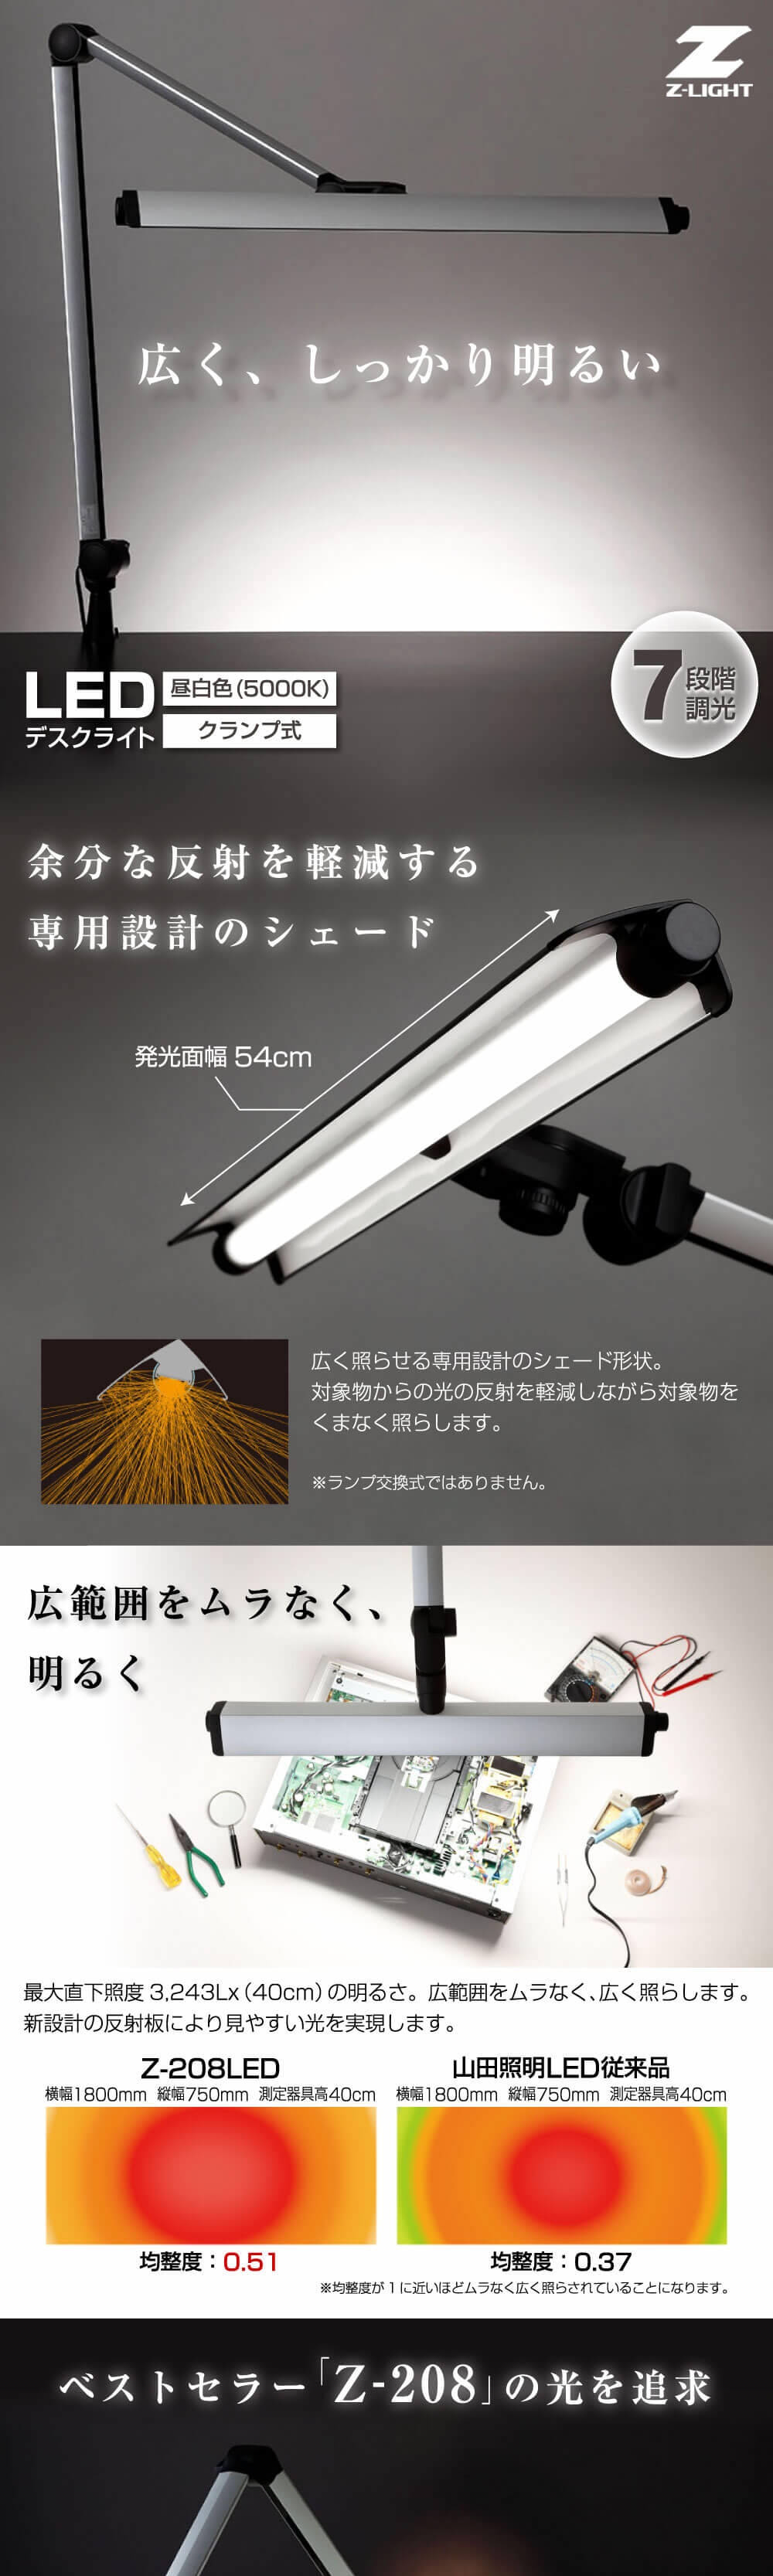 山田照明 Z-208LEDSL Z-Light(ゼットライト) LEDデスクライト リモート